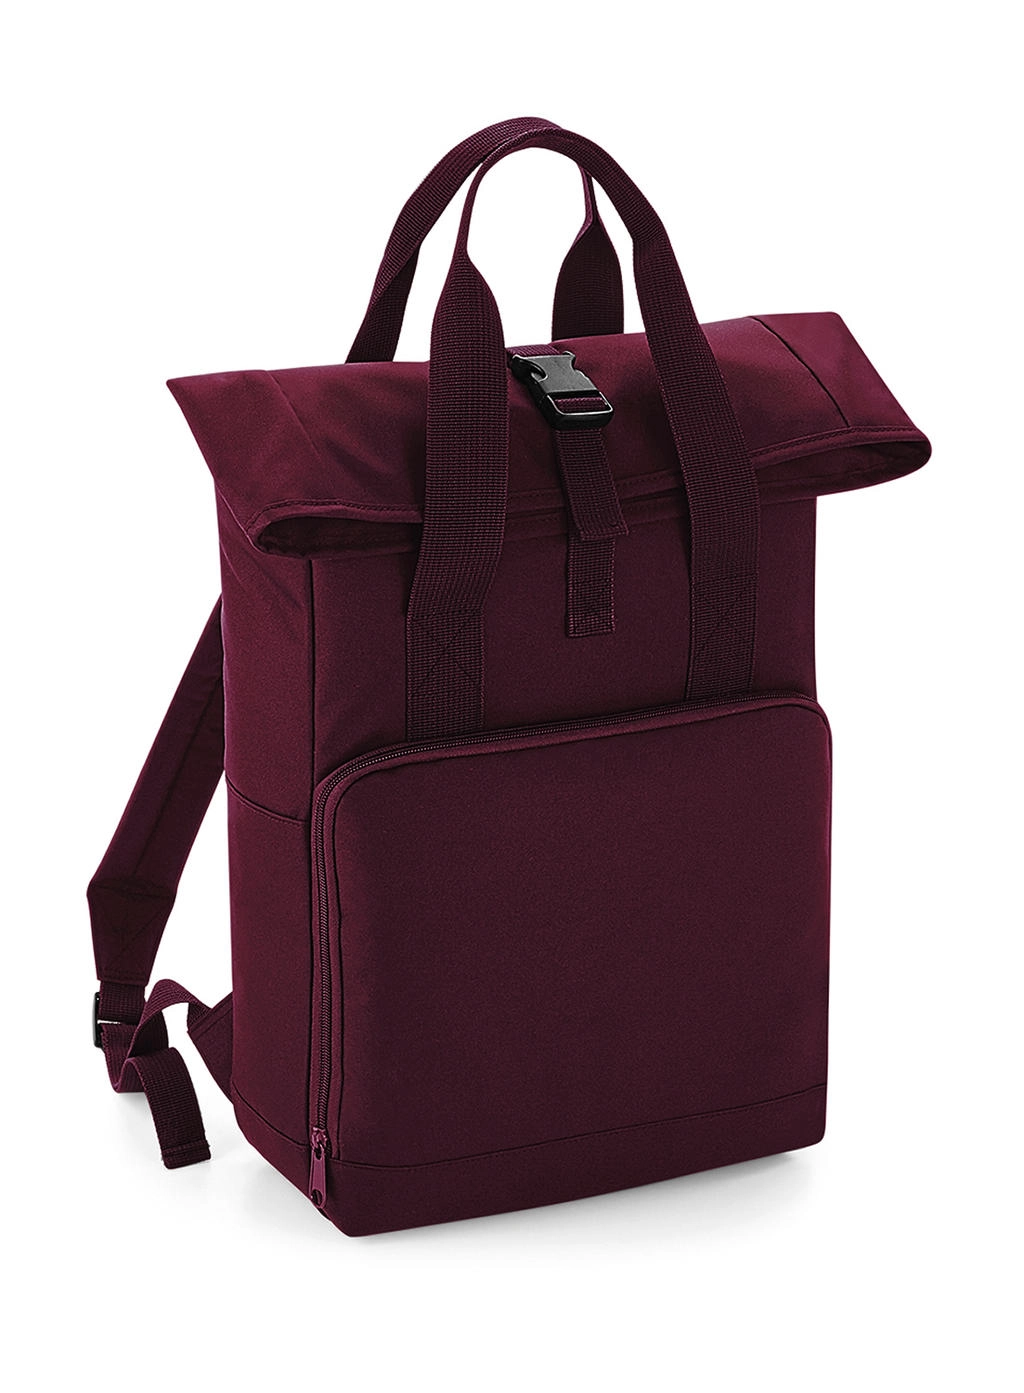 Twin Handle Roll-Top Backpack zum Besticken und Bedrucken in der Farbe Burgundy mit Ihren Logo, Schriftzug oder Motiv.